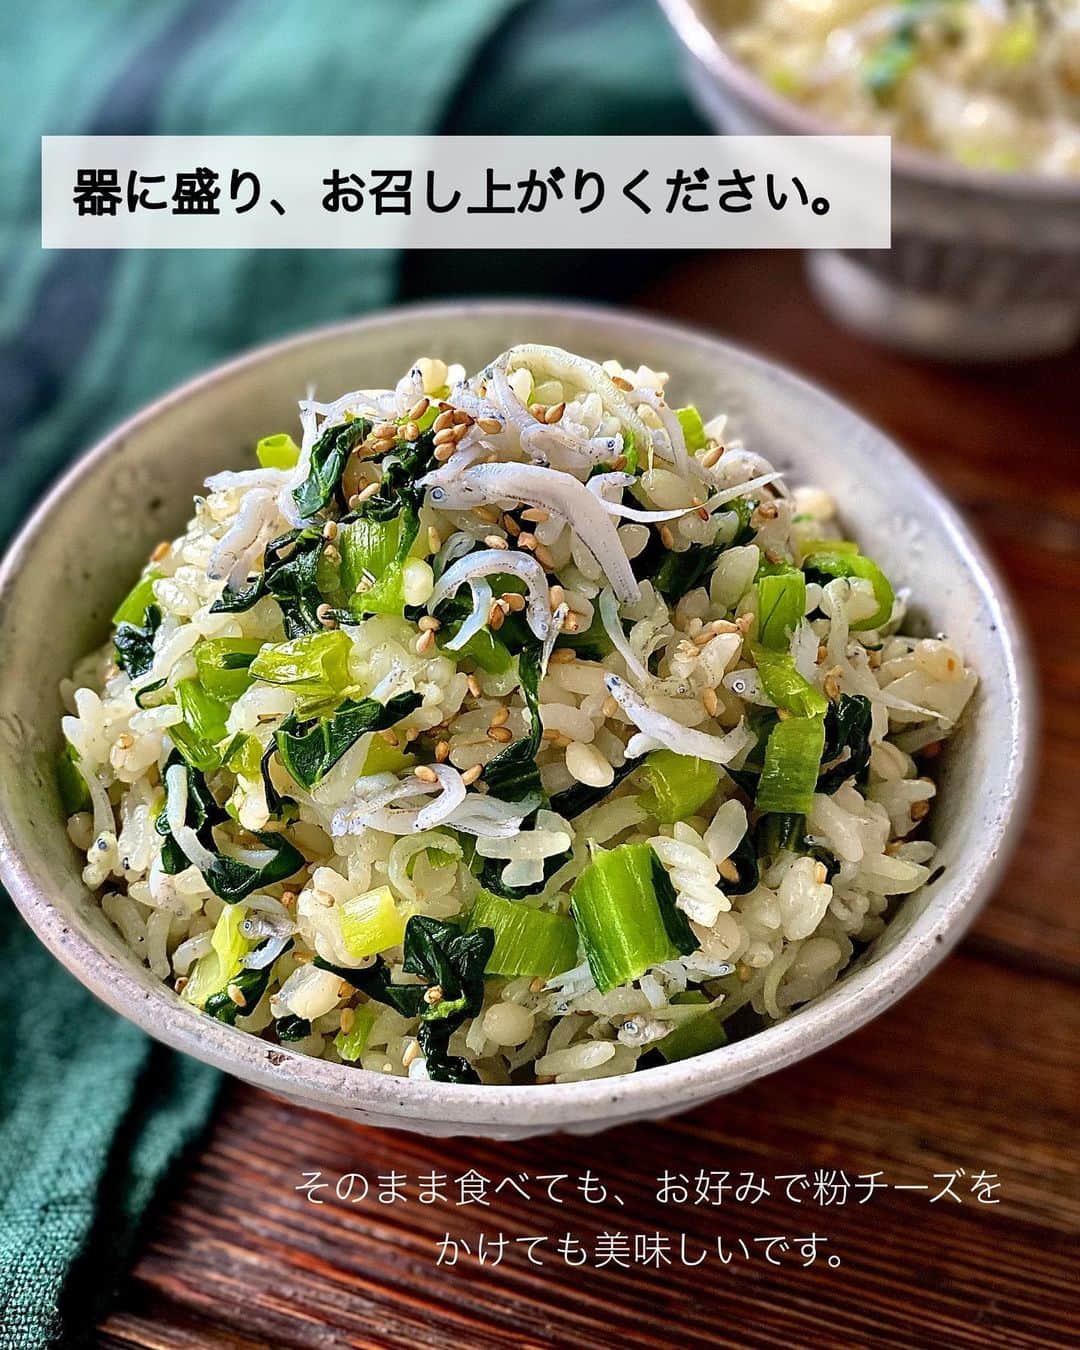 ちおりさんのインスタグラム写真 - (ちおりInstagram)「【小松菜が旨い！簡単混ぜごはん】 ⁡ レシピ色々は→ @chiori.m.m をチェック✅ ⁡ ⁡ ━︎━︎━︎━︎━︎━︎━︎━︎━︎━︎━︎ 胡麻としらすの菜めし ⁡ Nadiaレシピ🆔457028 ━︎━︎━︎━︎━︎━︎━︎━︎━︎━︎━︎ ⁡ ⁡ こんばんは(^ ^) ⁡ 今日は、小松菜のシャキシャキ感に しらすとごまの風味がやみつきになる 簡単混ぜごはんレシピです🥬 ⁡ 味付けはとってもシンプル。 小松菜も食べやすく 素材の味が引き立ちます✨ ⁡ ⁡ もち麦ご飯で作ると更に美味しいです😊 粉チーズをかけても合うので お好みでお試しください^ ^ ⁡ ⁡ ━︎━︎━︎━︎━︎━︎━︎━︎━︎━︎━︎━︎━︎━︎━︎━︎━︎━︎━︎━︎ ⁡ ⁡ ✍︎ ✍︎recipe ✍︎ ✍︎ ⁡ ⁡ 👩‍🌾【材料】2人分 •あたたかいご飯……350g •小松菜……1/2袋（約120g） •しらす干し（または釜揚げしらす）……40g〜 •ごま油……小さじ2 Aみりん……小さじ2 A和風だしの素……小さじ1 A酢……小さじ1/2 A砂糖……少々 •炒りごま……大さじ1 •塩……適量 ⁡ ⁡ ⁡ ⁡ 👩‍🍳【作り方】 ①小松菜は細かく切る。 ⁡ ②フライパンにごま油を中火で熱し、小松菜を炒める。しんなりしてきたら【A】を加え汁気が少なくなるまでさらに1分ほど炒める。 ⁡ ③ボウルにあたたかいご飯、②の小松菜、しらす干し、炒りごまを入れて混ぜ、塩を加えて味を調える。 ⁡ ④器に盛り、お召し上がりください。そのまま食べても、お好みで粉チーズをかけても美味しいです。 ⁡ ⁡ ⁡ ⁡ ⁡ 📝【POINT】 •もち麦ごはんで作っても美味しいです。 ⁡ •しらすはお好みで量を増やしてください。 釜揚げしらすでもお作りいただけます。 ⁡ ⁡ ⁡ ︎≡︎≡︎≡︎≡︎≡︎≡︎≡︎≡︎≡︎≡︎≡︎≡︎≡︎≡︎≡︎≡︎≡︎≡︎≡︎≡︎≡︎≡︎≡︎≡︎≡︎≡︎≡︎≡︎≡︎≡︎≡︎≡︎≡︎ 【✅新刊レシピ本のお知らせ】 📕ちおり流くり返し作りたいおかず 🙇🏻‍♀️おかげ様で書籍累計10万部を突破しました。 ⁡ ⁡ 全国の書店、Amazon、楽天ブックス 宝島チャンネルにて発売中です。 ⁡ ➤ ➤ ➤ @chiori.m.m のストーリーハイライト。 プロフィールのリンクからご覧いただけます😊 📗ちおりの簡単絶品おかず１、２ 既刊もぜひご覧いただきたいです。 ⁡ ≡︎≡︎≡︎≡︎≡︎≡︎≡︎≡︎≡︎≡︎≡︎≡︎≡︎≡︎≡︎≡︎≡︎≡︎≡︎≡︎≡︎≡︎≡︎≡︎≡︎≡︎≡︎≡︎≡︎≡︎≡︎≡︎≡︎≡︎ ⁡ ⁡ 最後までご覧いただきありがとうございます😊 皆さんのいいね、コメント、レシピ保存が 日々の励みになっています^ ^ ⁑ ⁑ ⁑ ⁑ ⁑ ⁑ ⁑ ⁑ ⁑ #混ぜごはん #混ぜご飯   #Nadiaレシピ #Nadiaartist  #japanesefood   #食卓 #献立 #簡単ごはん #おうちごはん　 #簡単レシピ #節約レシピ #時短レシピ  #日々の暮らし #作り置きレシピ   #夕飯レシピ #お弁当レシピ #しらす  #料理初心者 #おつまみレシピ #しらすレシピ  #作り置き #小松菜 #小松菜レシピ」4月3日 21時10分 - chiori.m.m